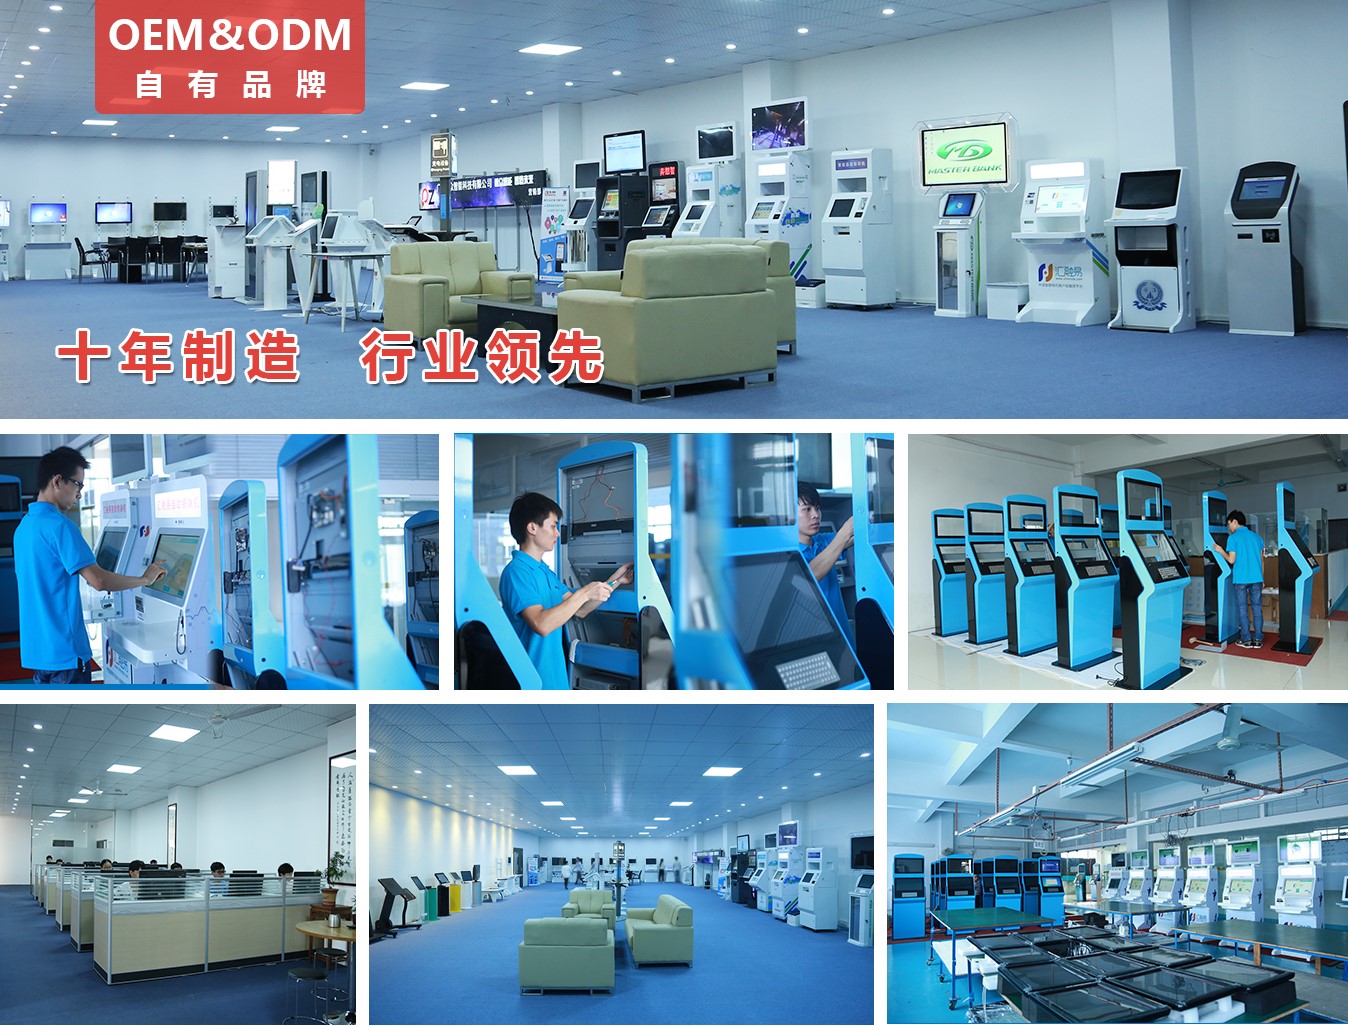 19寸壁挂横屏广告机PZ-19BE--广州磐众智能科技有限公司